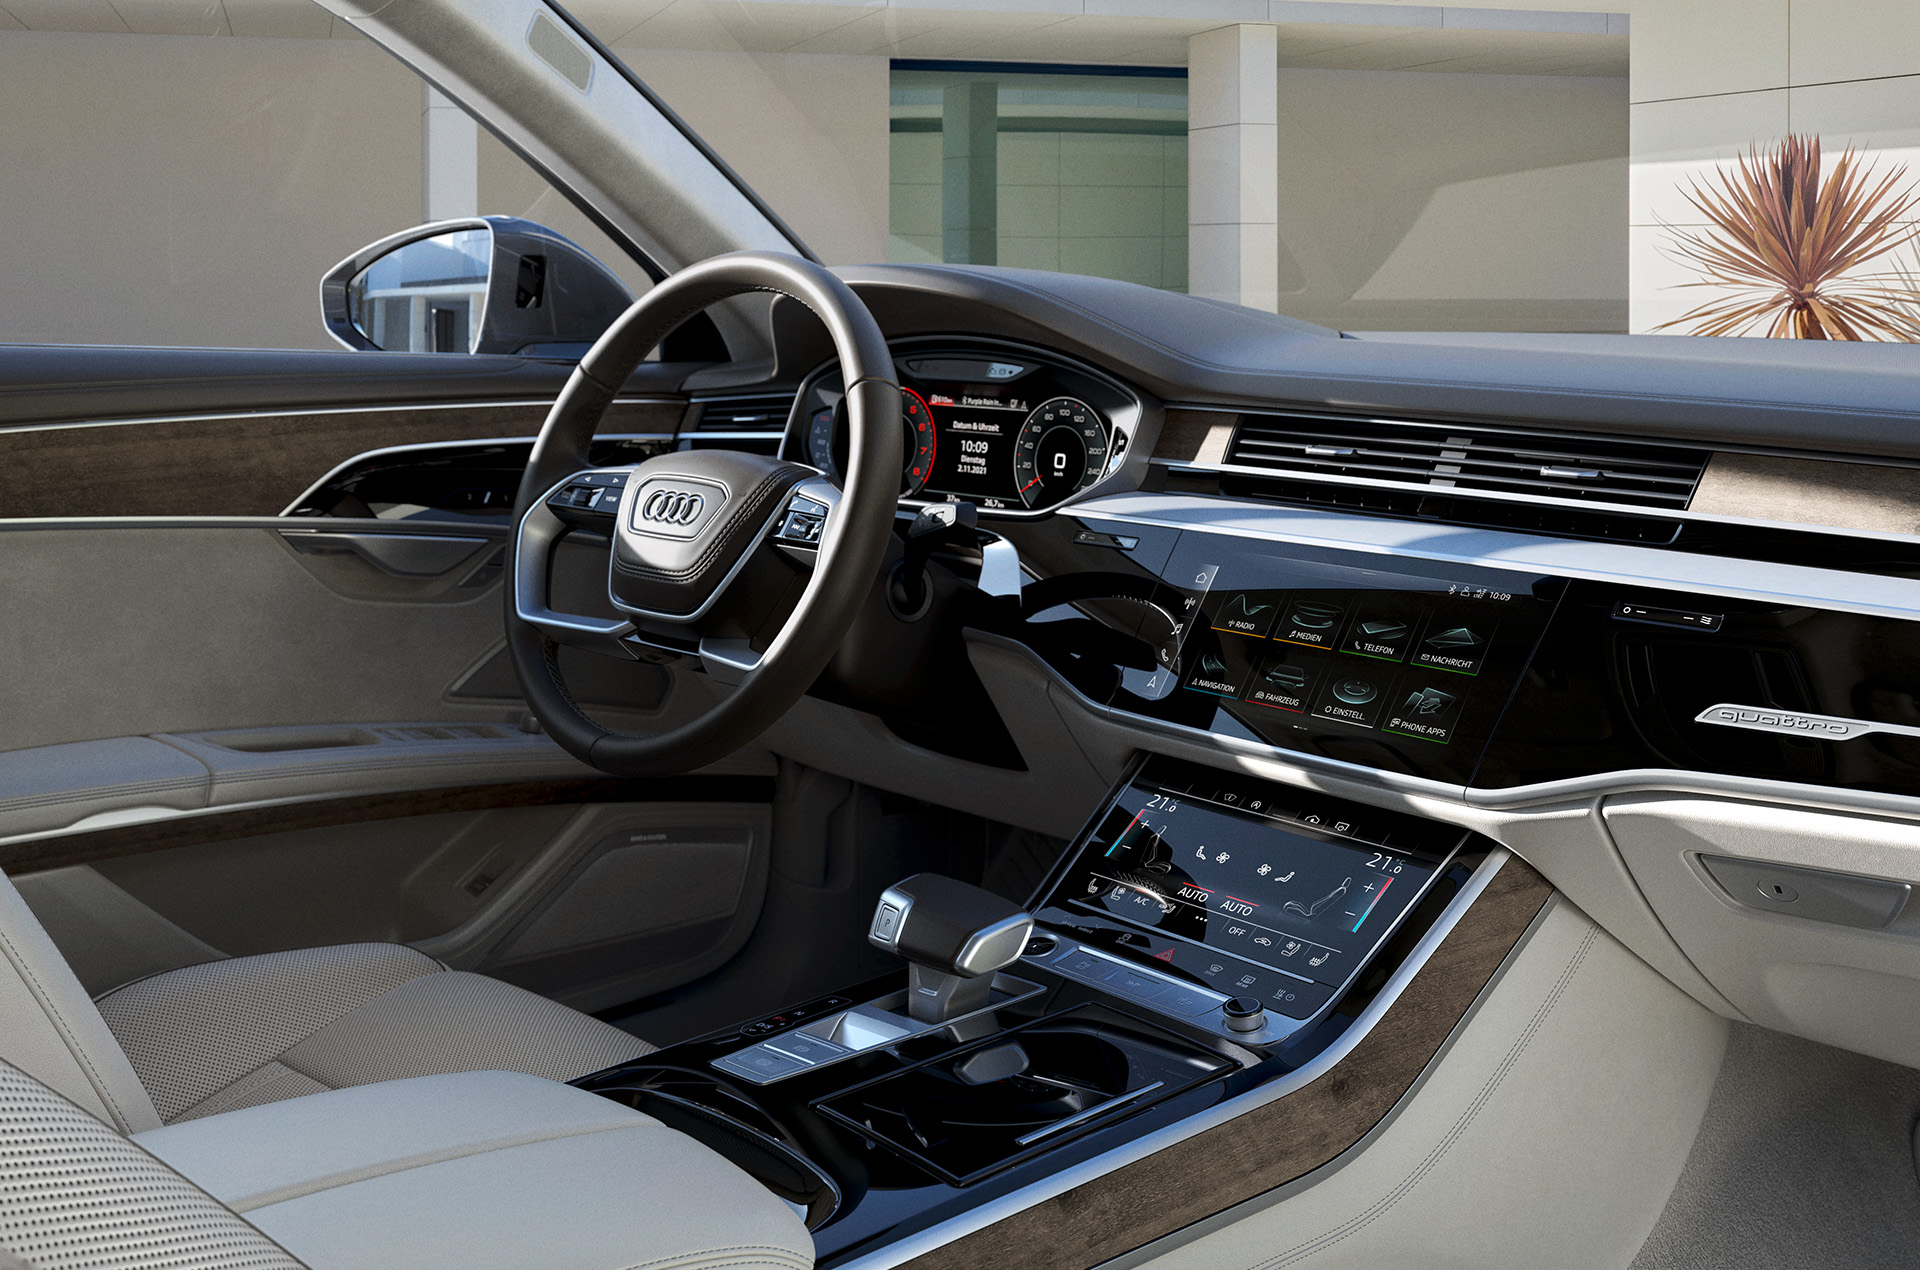 Bien que ses technologies numériques soient nombreuses, l'intérieur de la berline Audi A8 se caractérise par un design minimaliste.